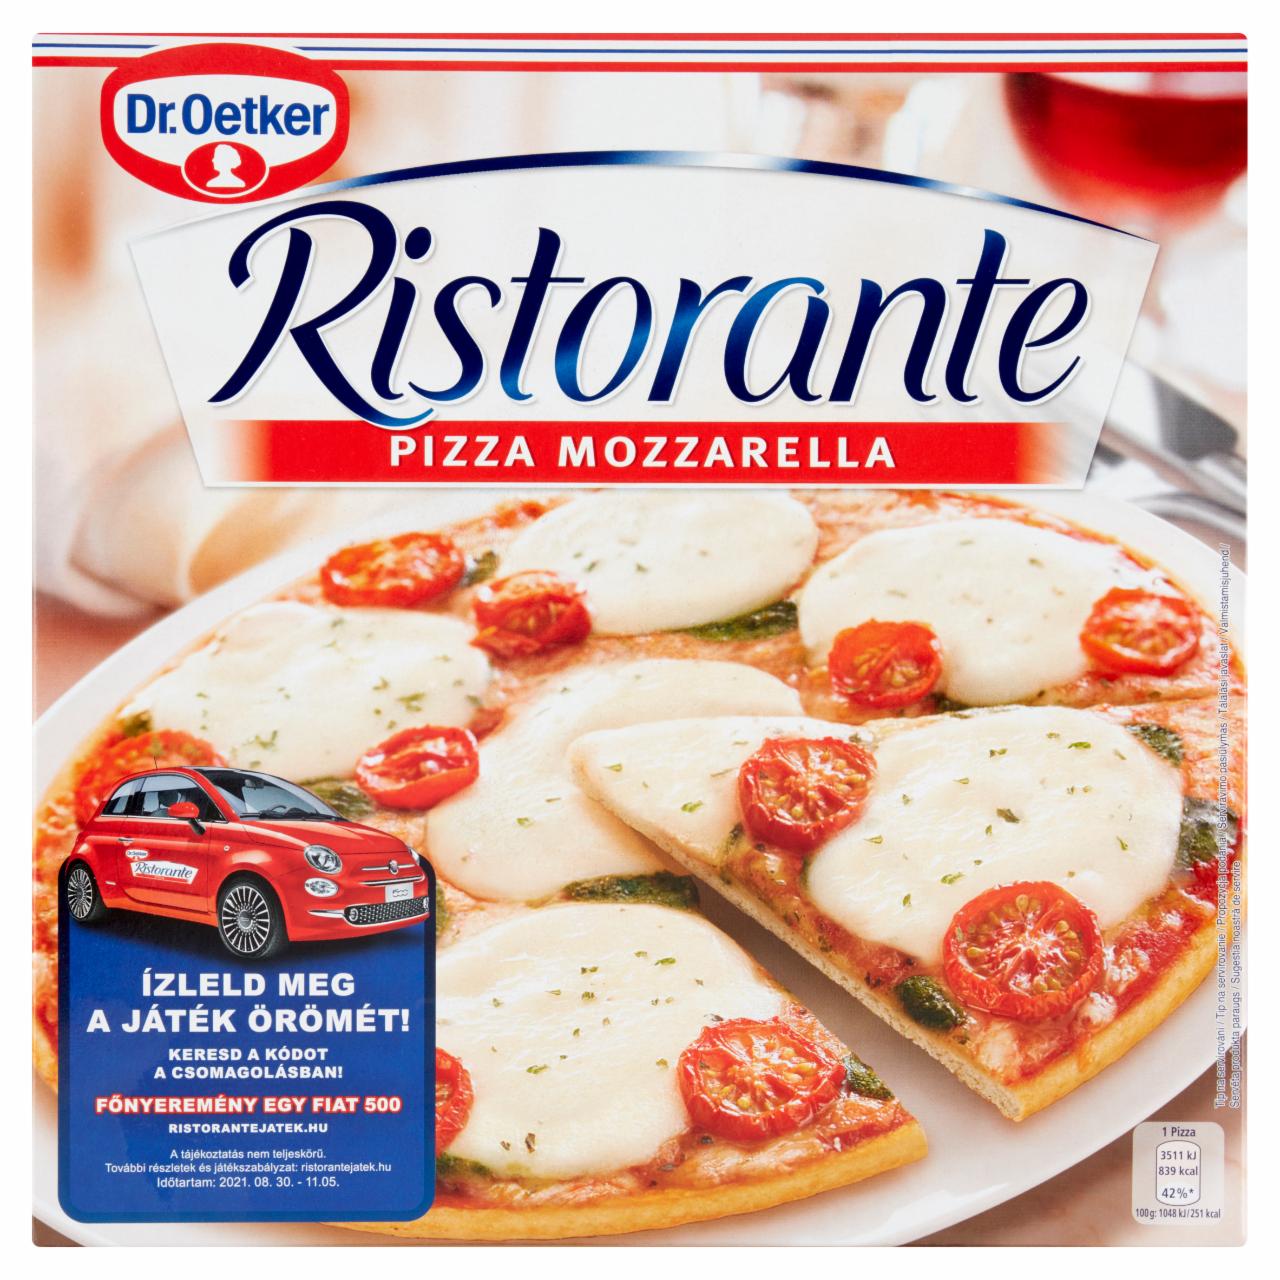 Képek - Dr. Oetker Ristorante Pizza Mozzarella gyorsfagyasztott pizza sajttal és bazsalikommal 335 g